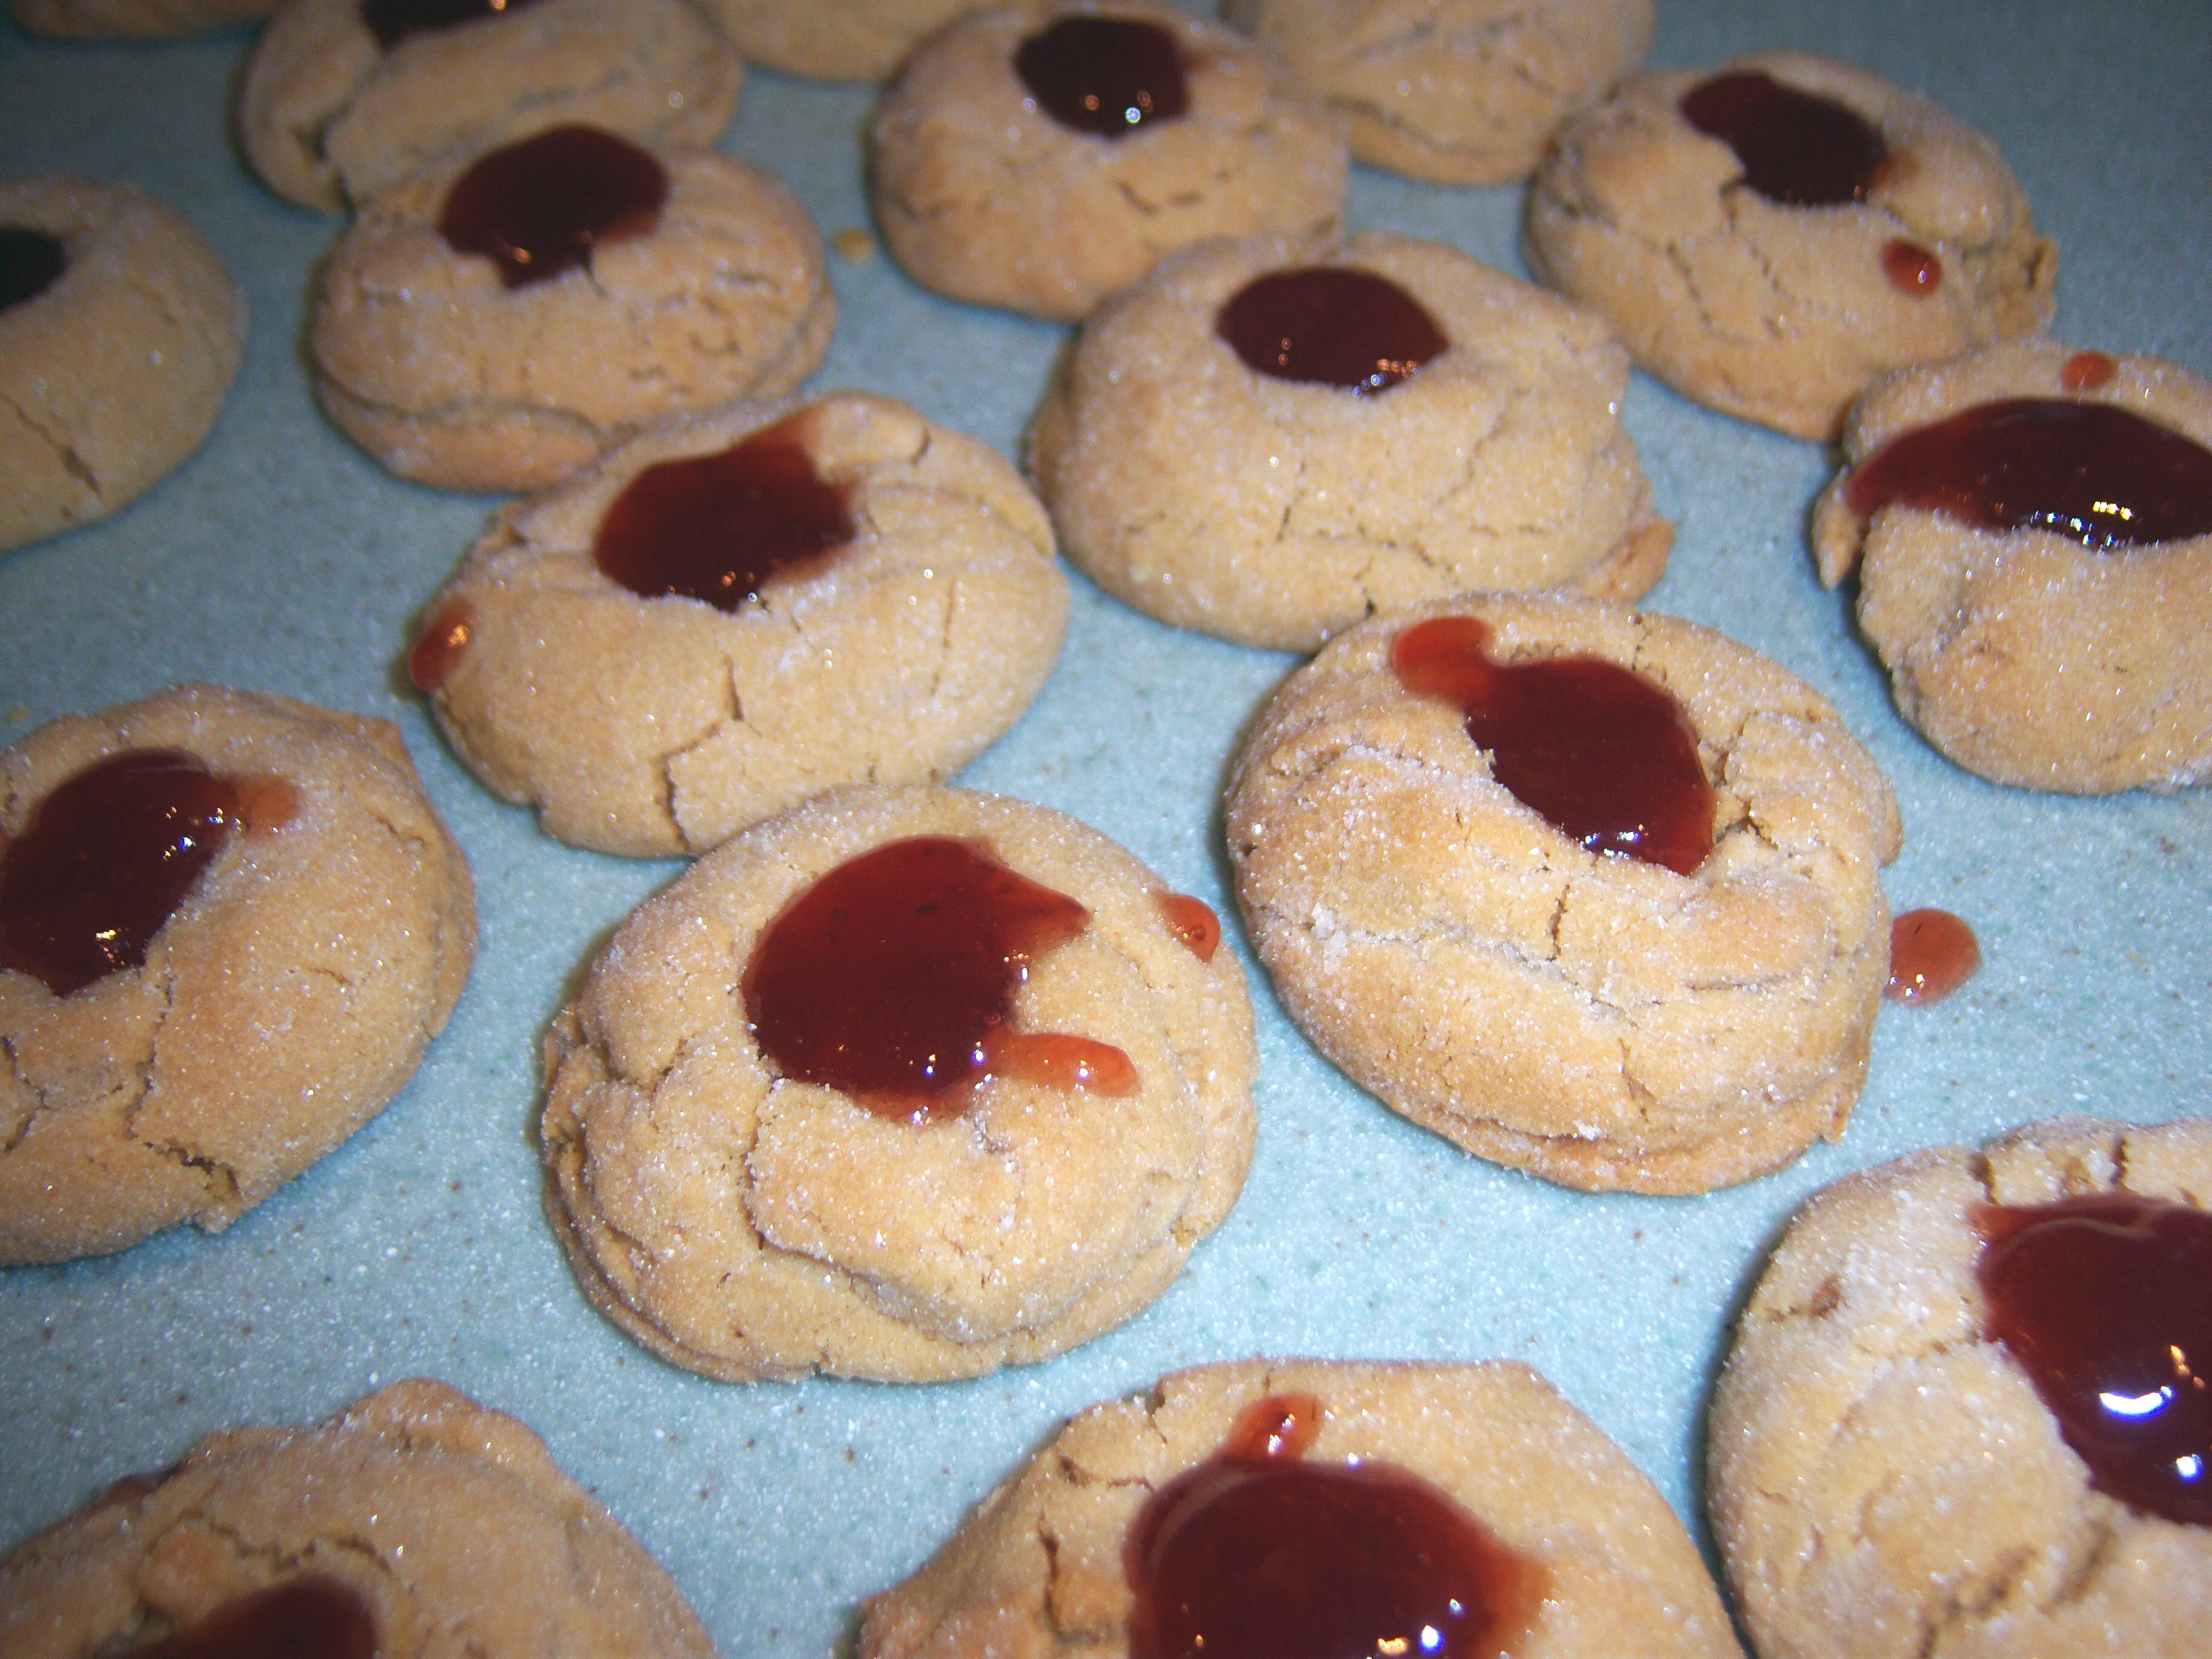 PBJ cookies